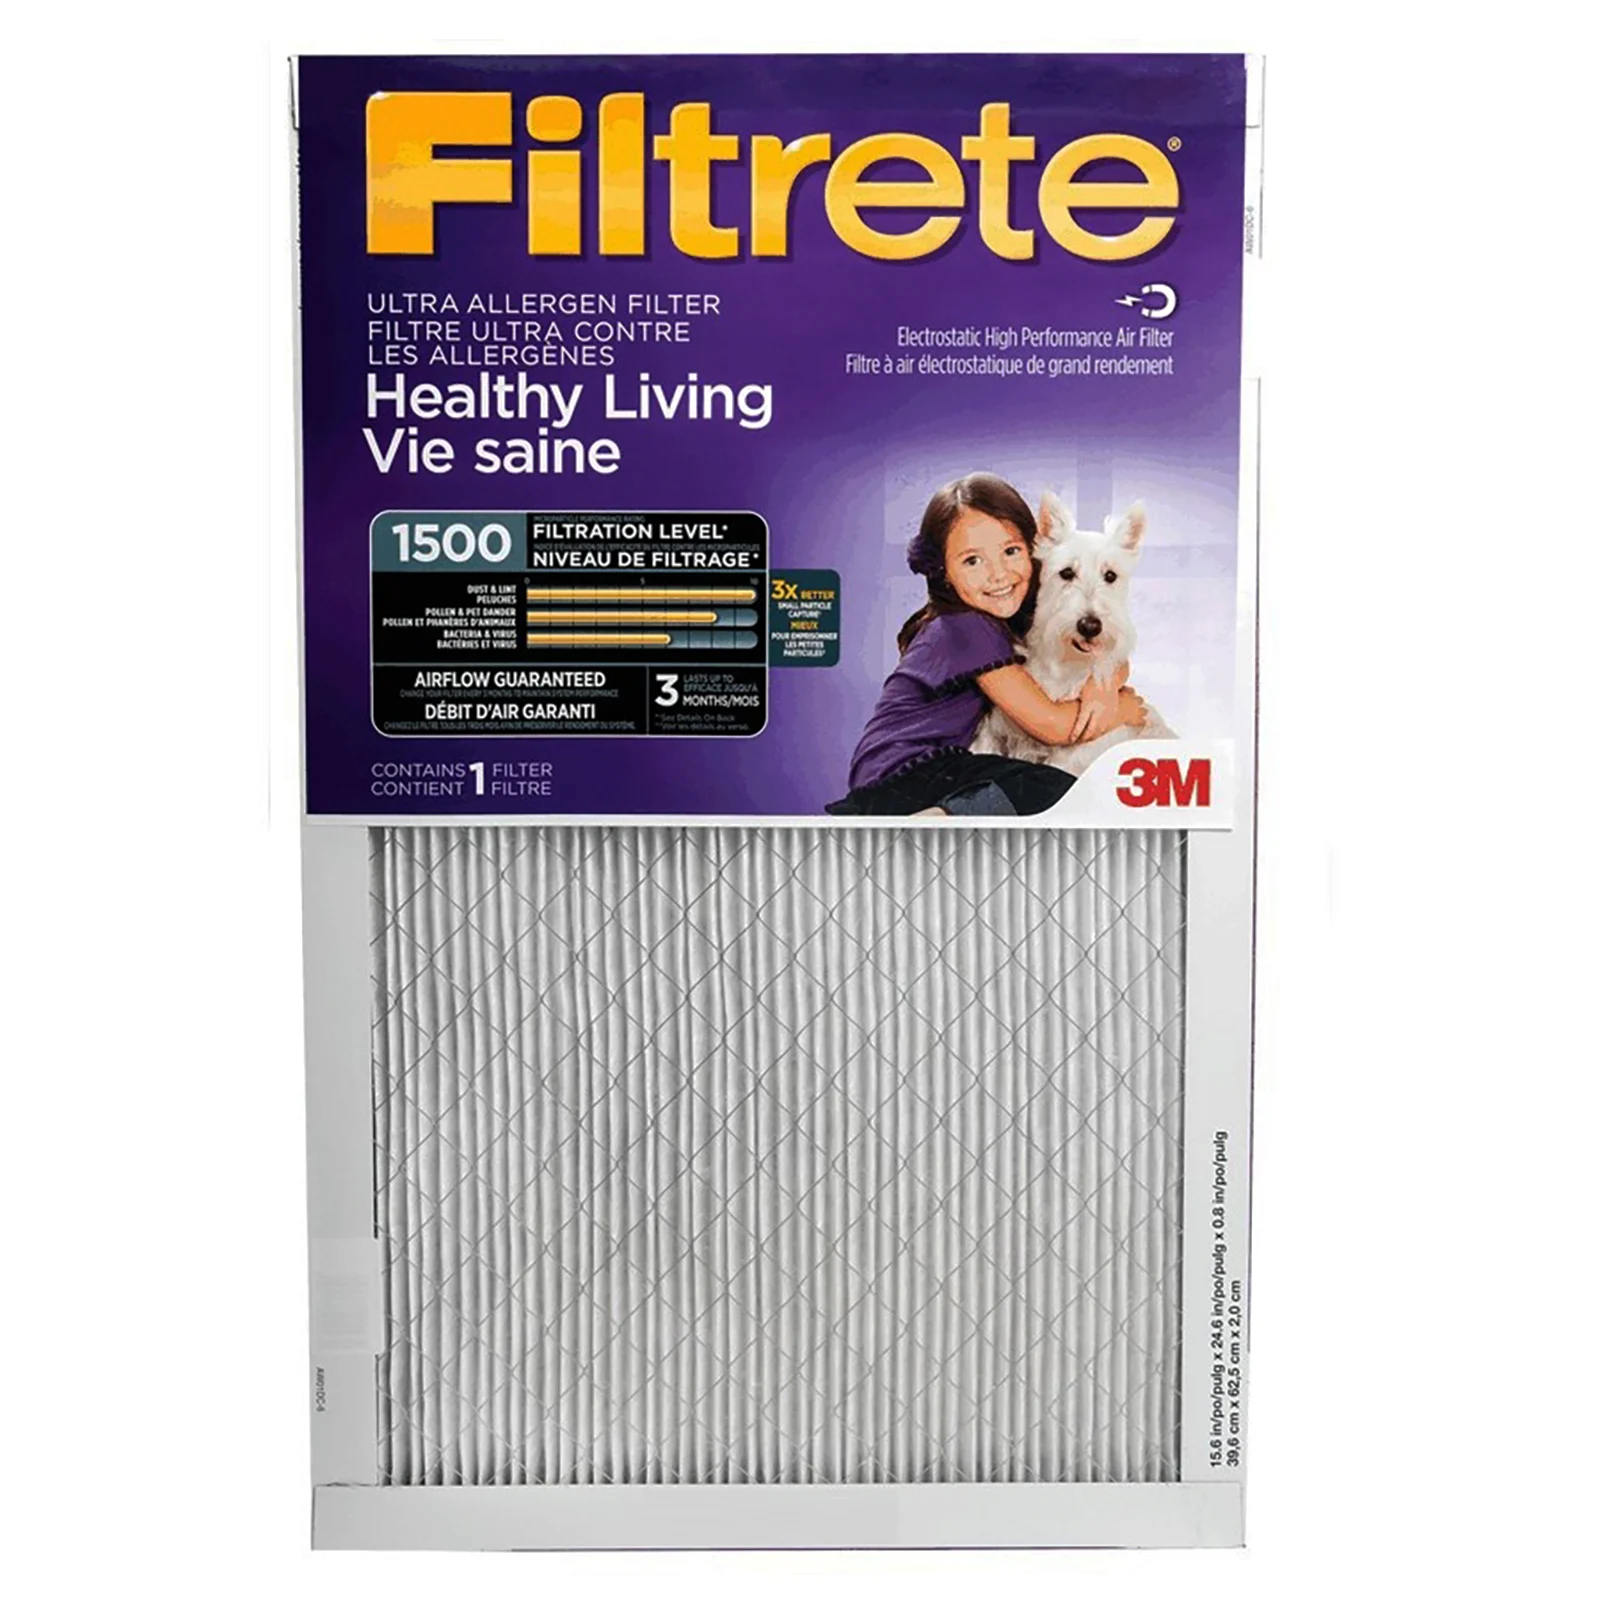 An allergen furnace filter